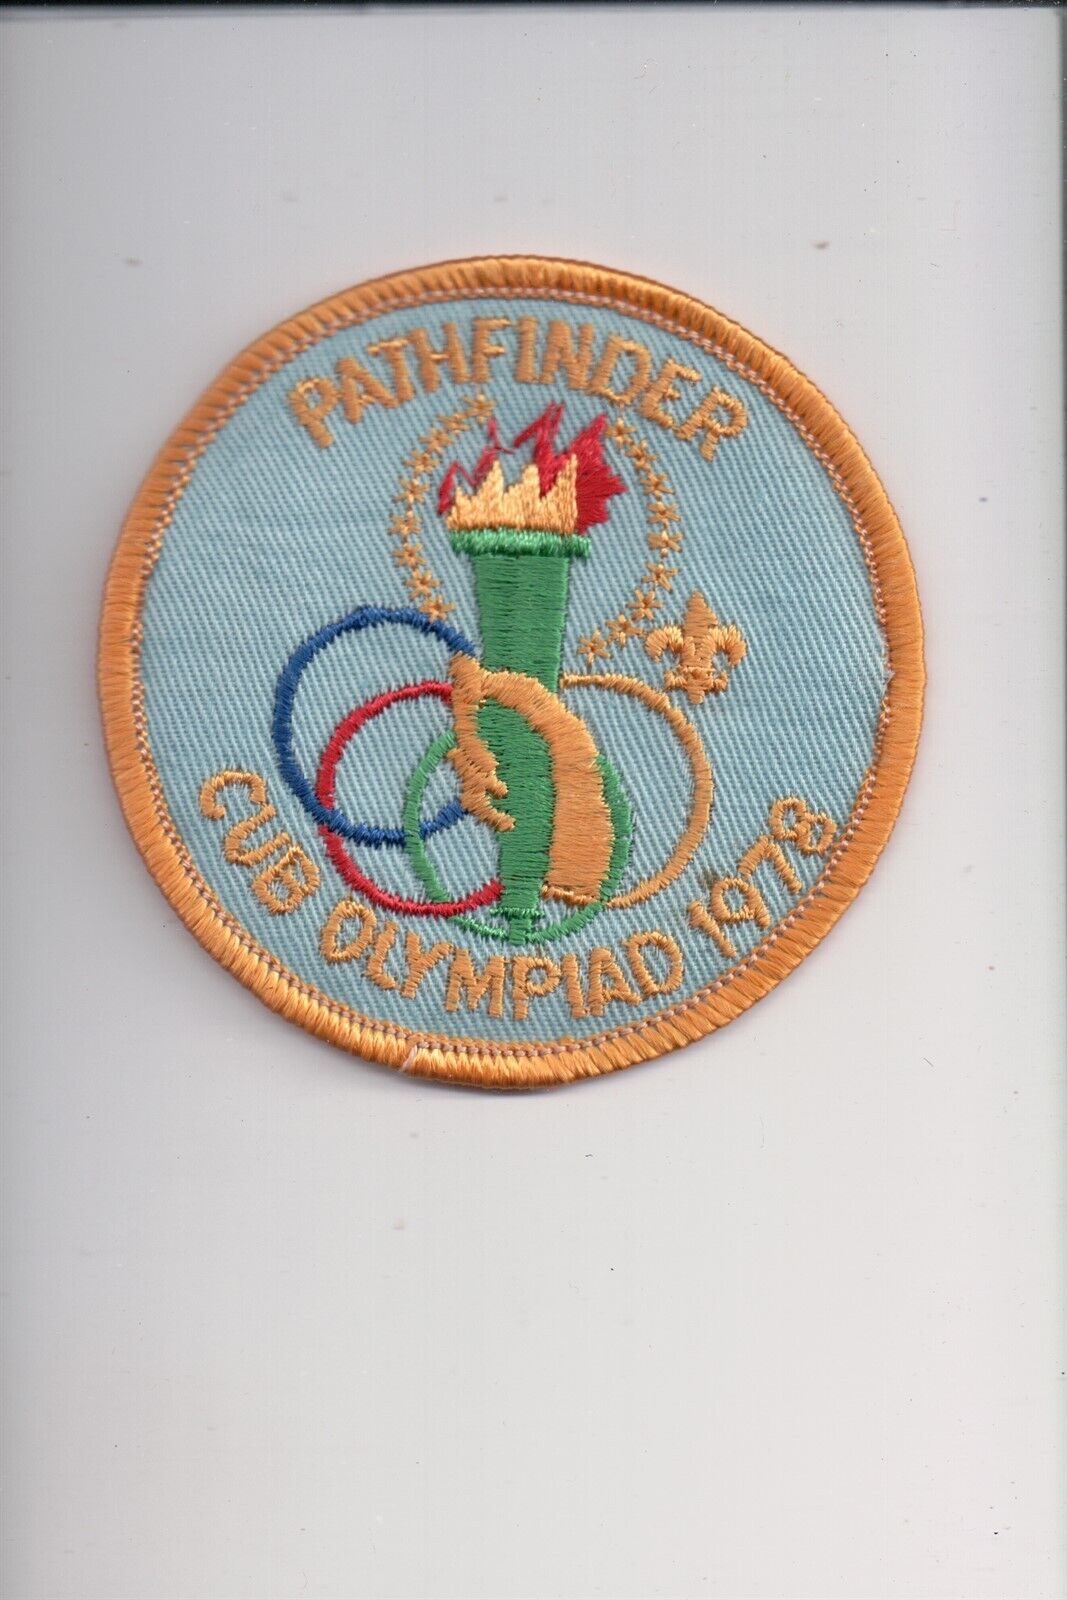 1978 Pathfinder Cub Olympiad patch